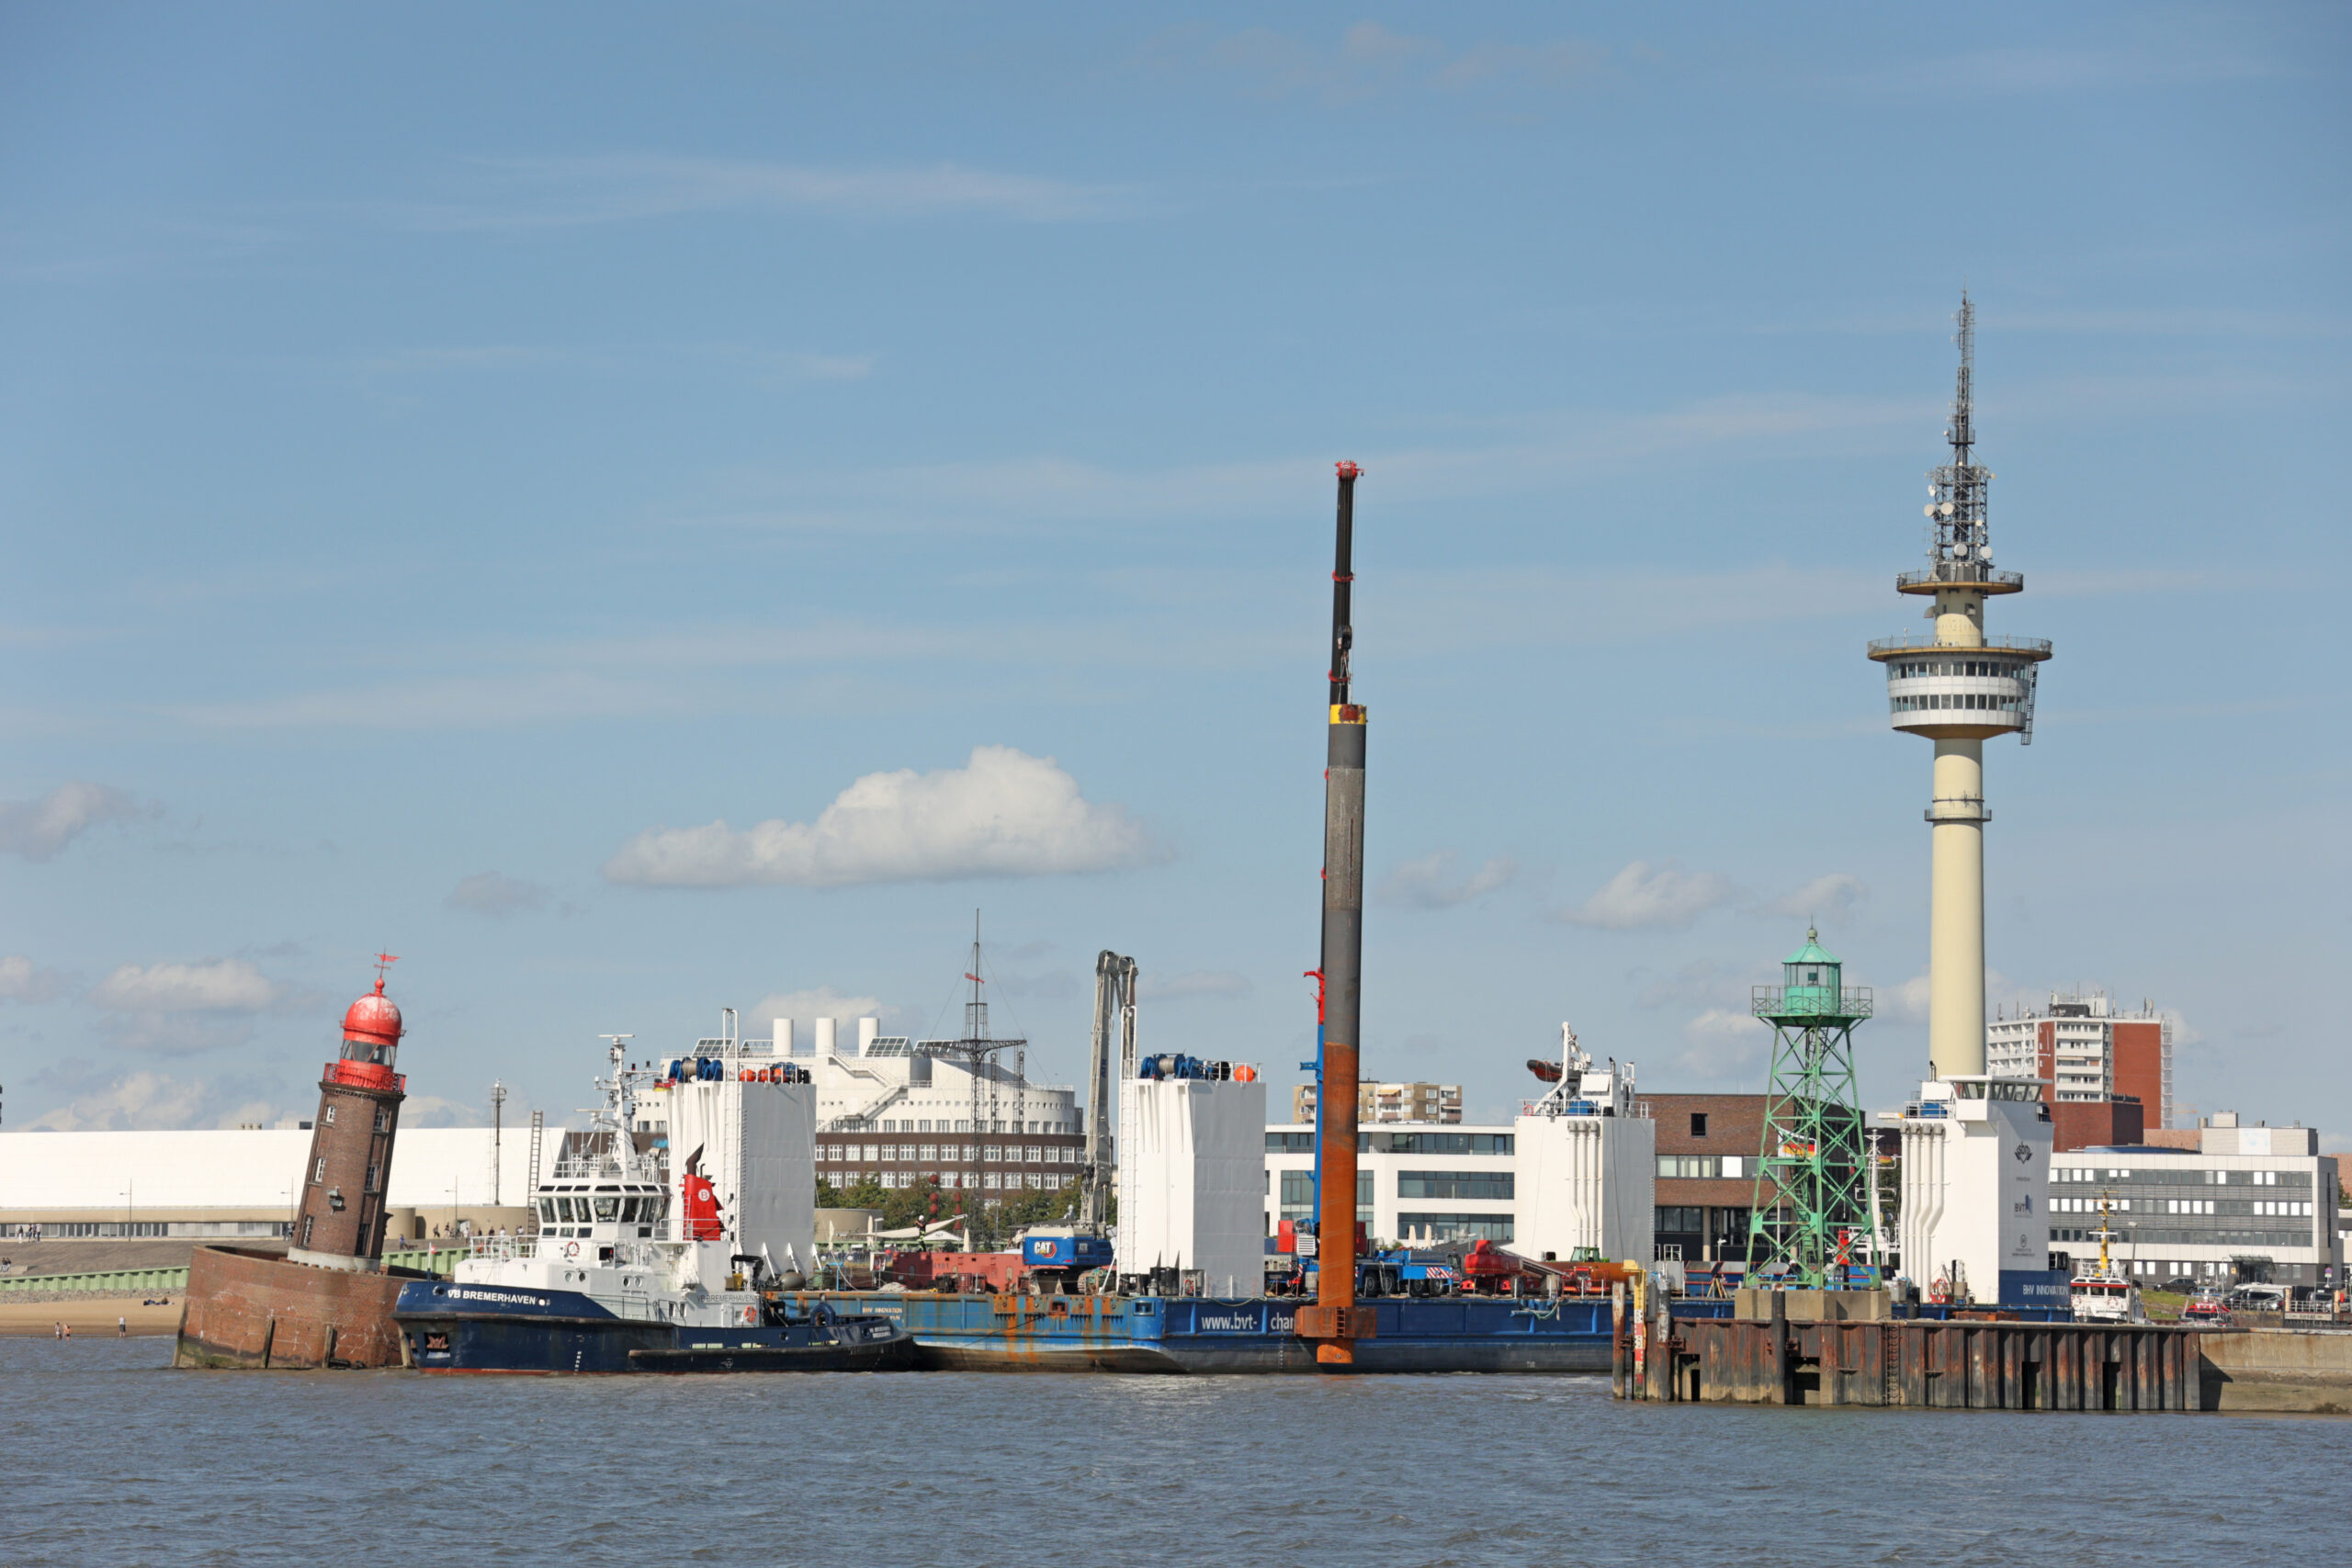 Ein Schlepper zieht einen Ponton zum abgesackten Moleturm in Bremerhaven. Der bedrohlich schiefe an der Einfahrt zum Fischereihafen in Bremerhaven soll näher untersucht werden.